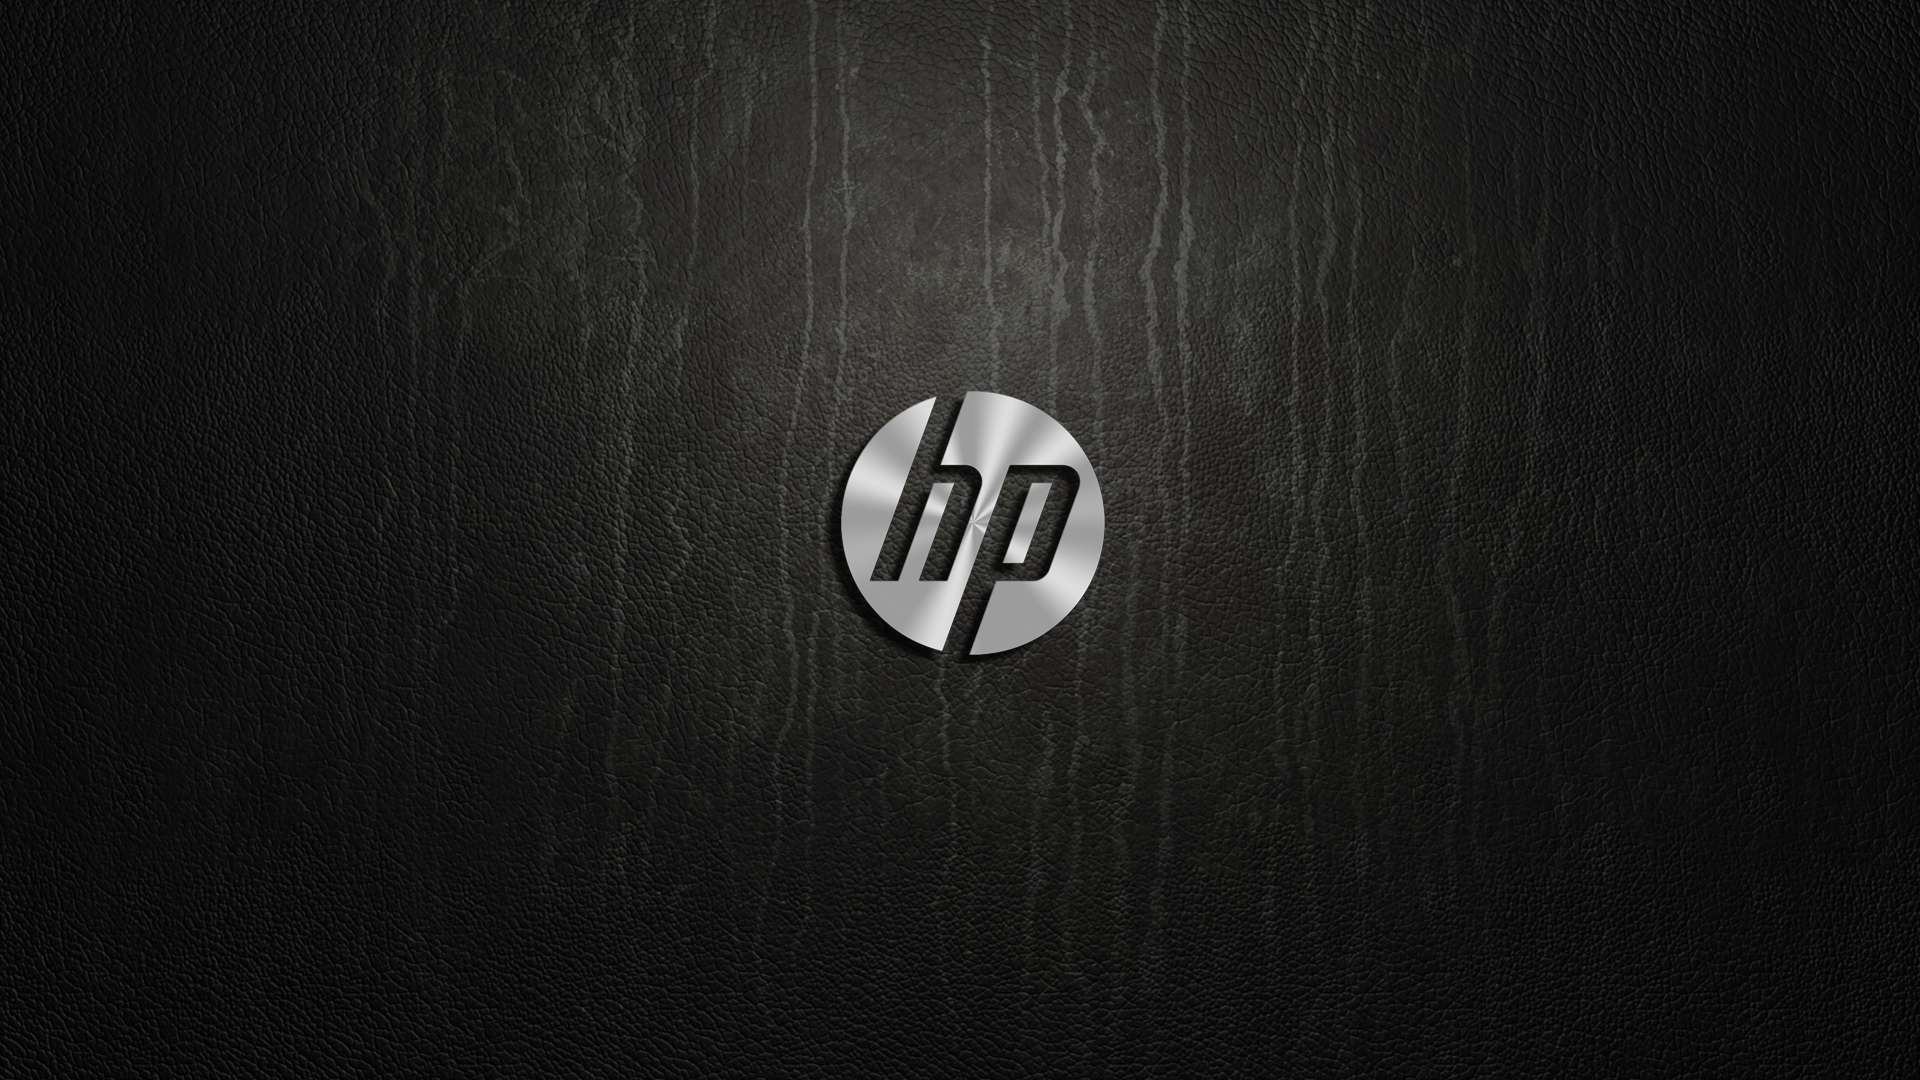 Hewlett Packard Desktop Wallpaper - WallpaperSafari